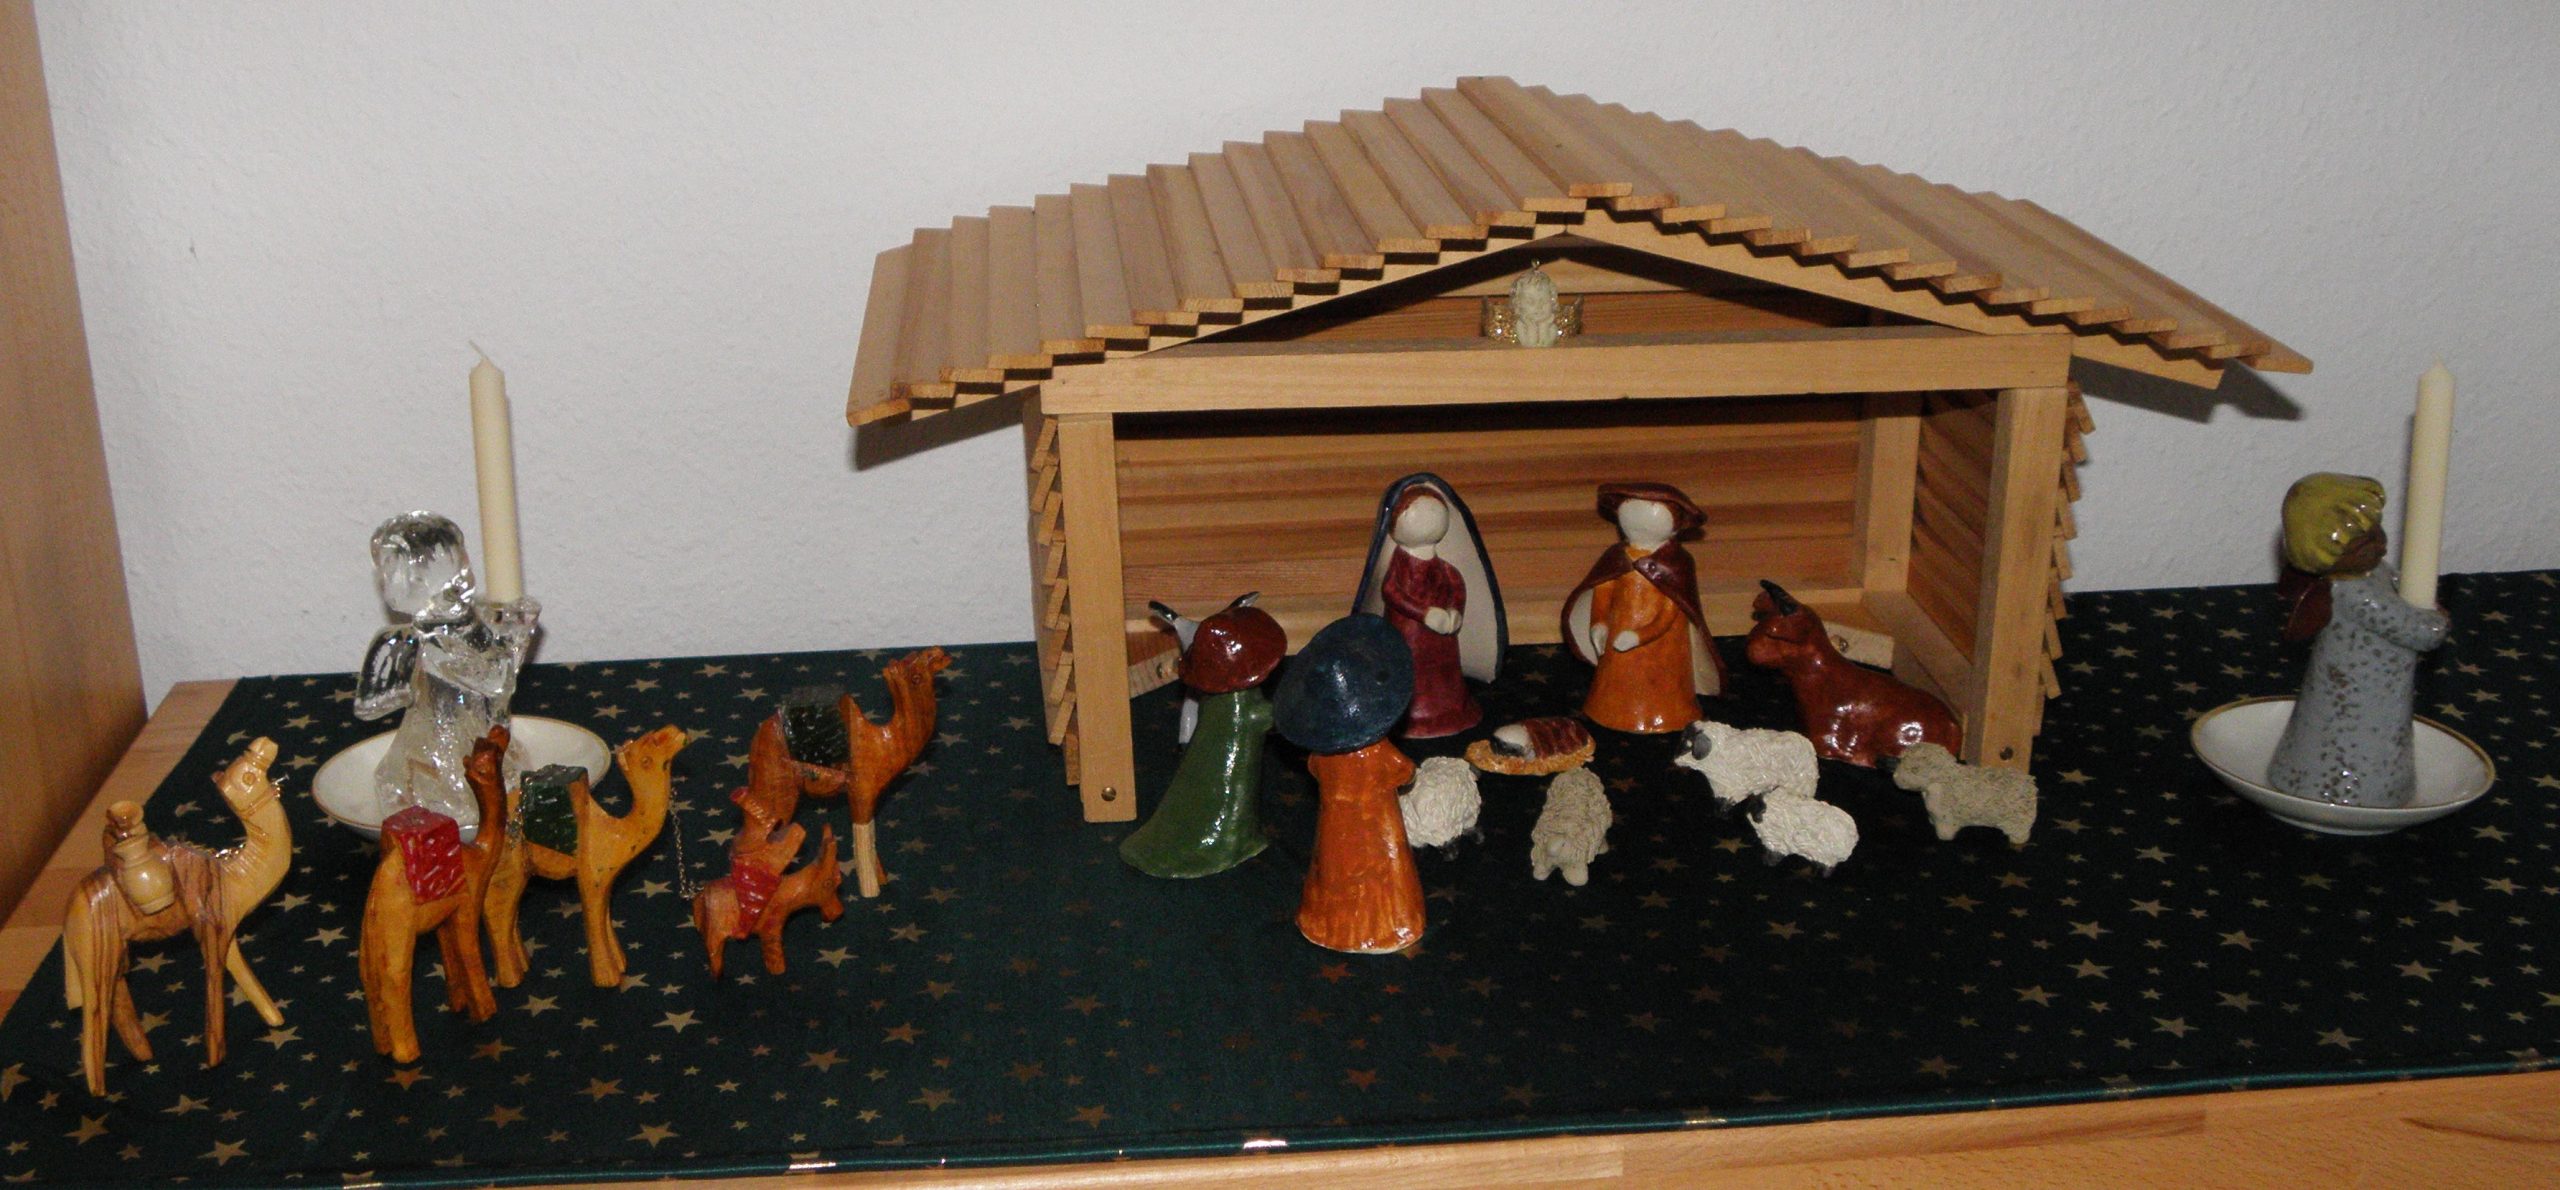 Ein selbstgebastelte Krippe aus Ton. Die Heilige Familie, 2 Hirten und Tiere sind in einem offenen Stall aus Holz. Eine Kamelkarawane nähert sich dem Stall. " Engelfiguren tragen Kerzen.